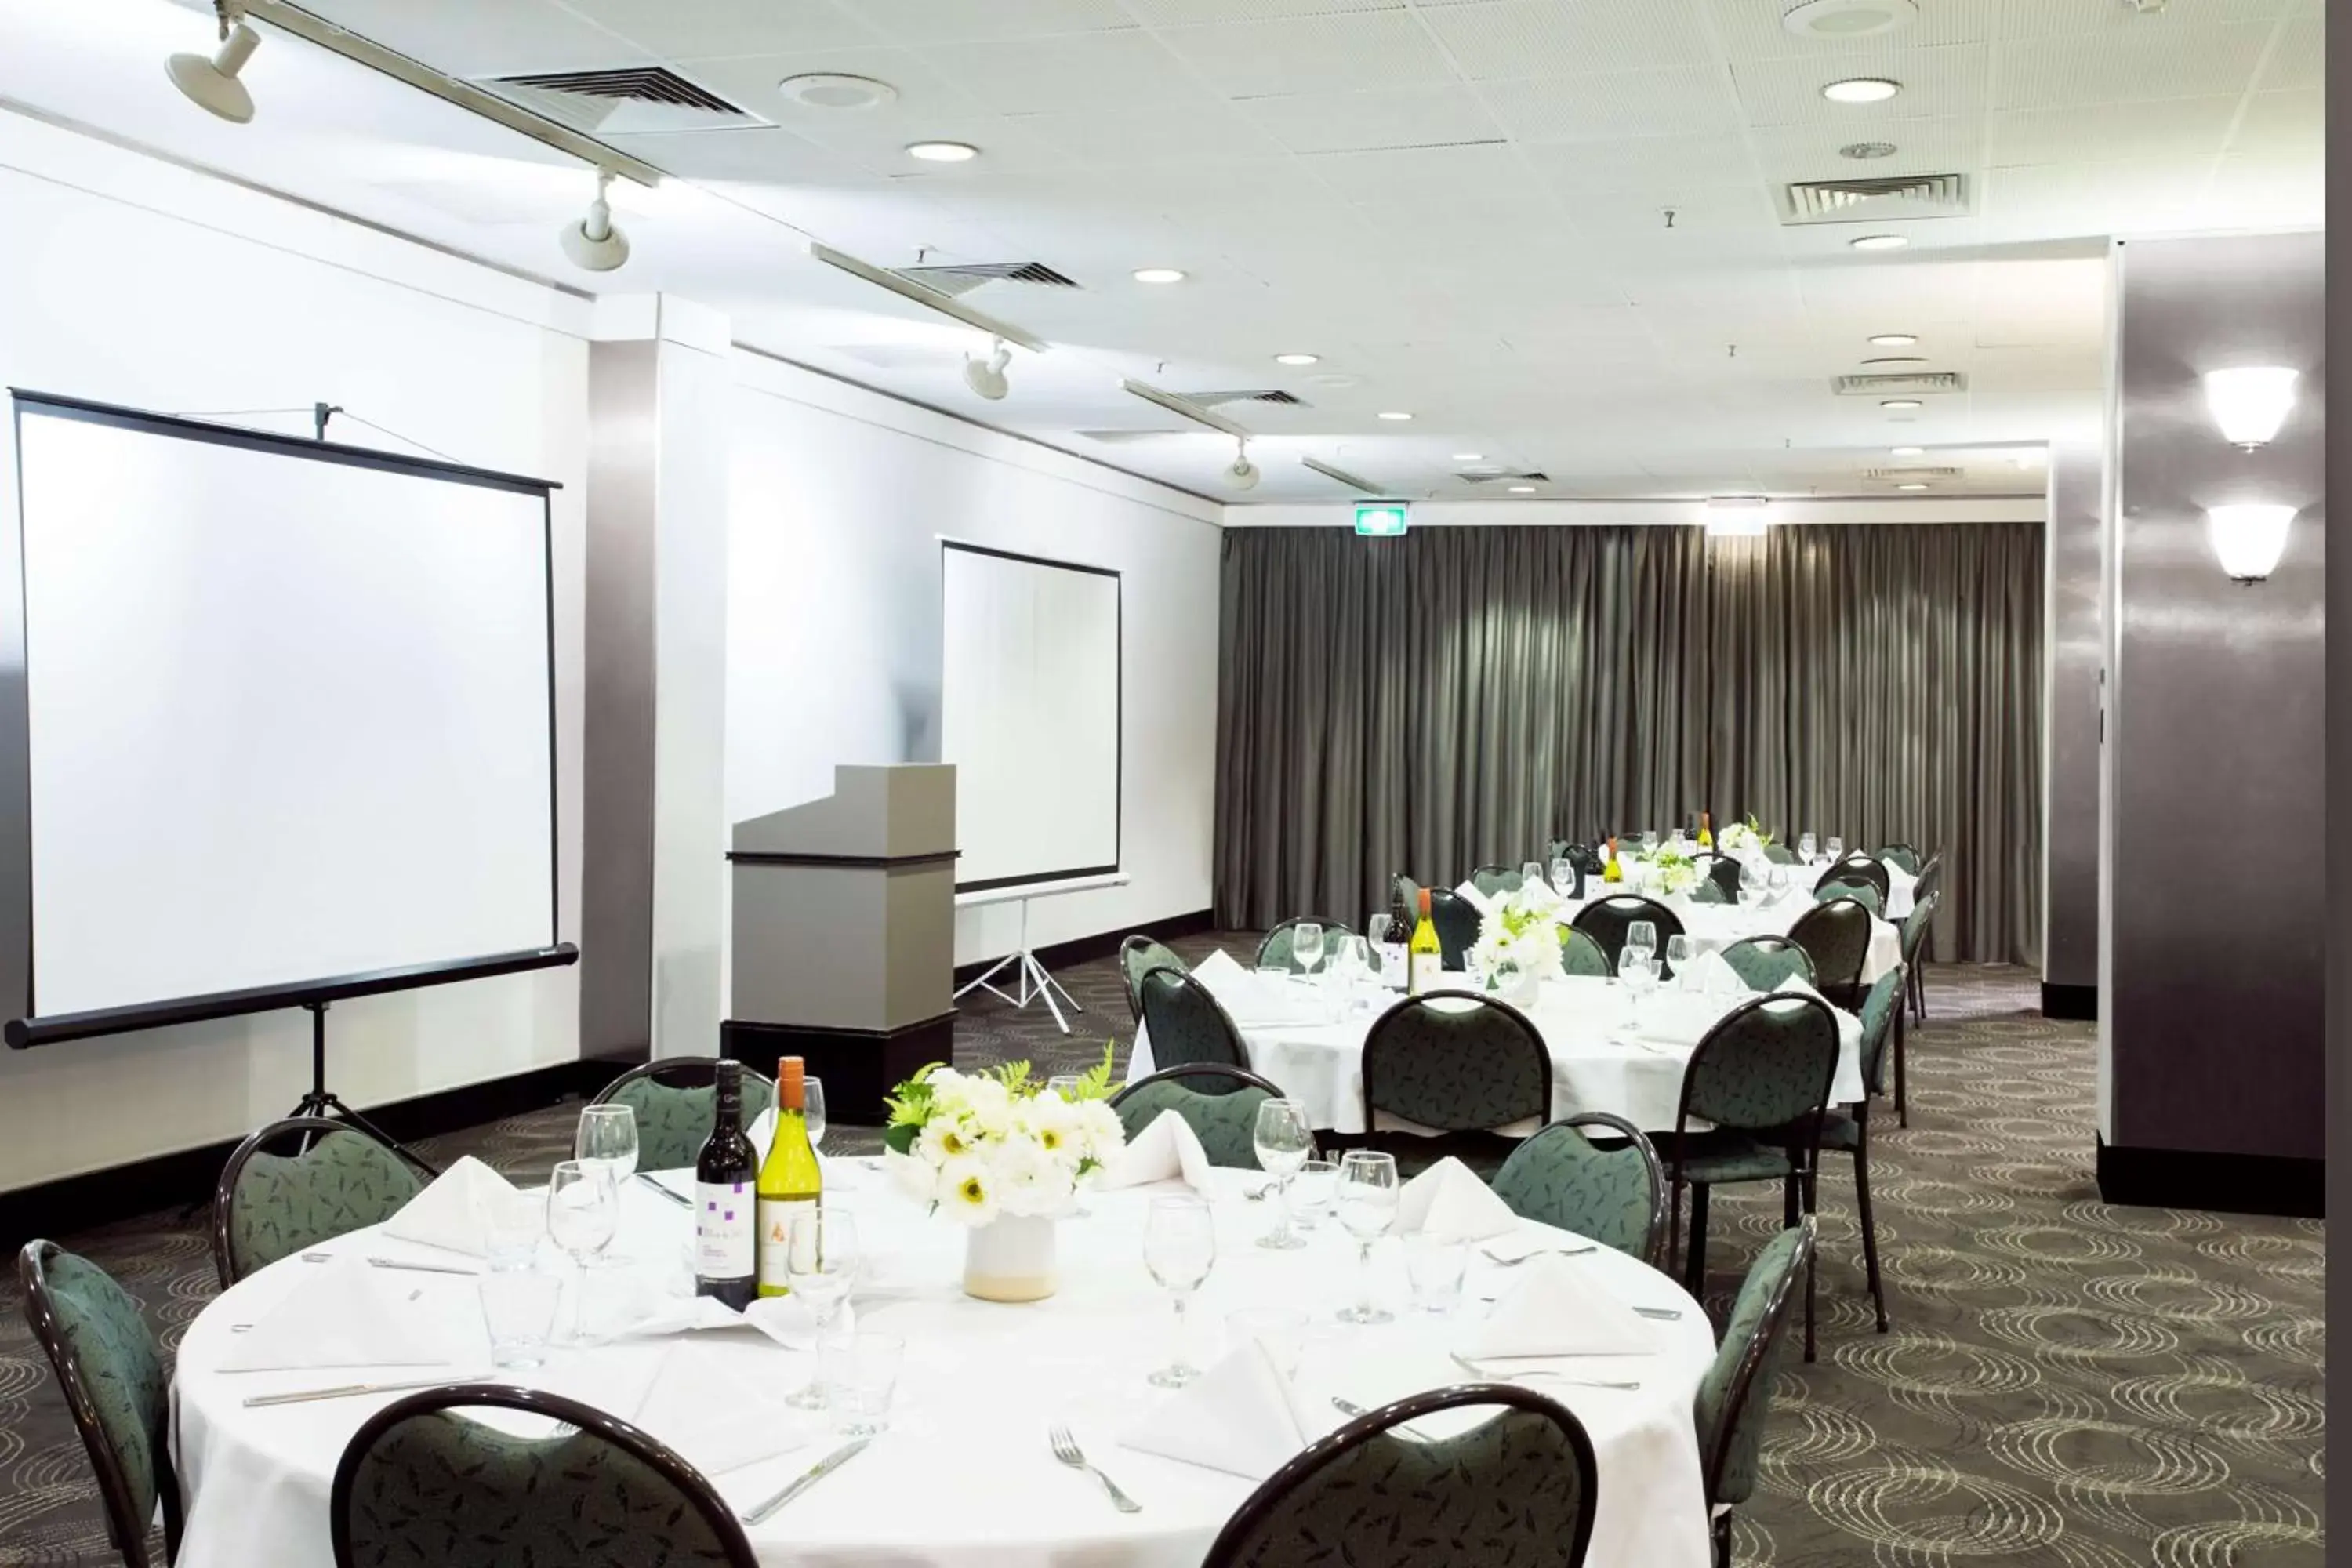 Banquet/Function facilities, Banquet Facilities in Metro Aspire Hotel Sydney